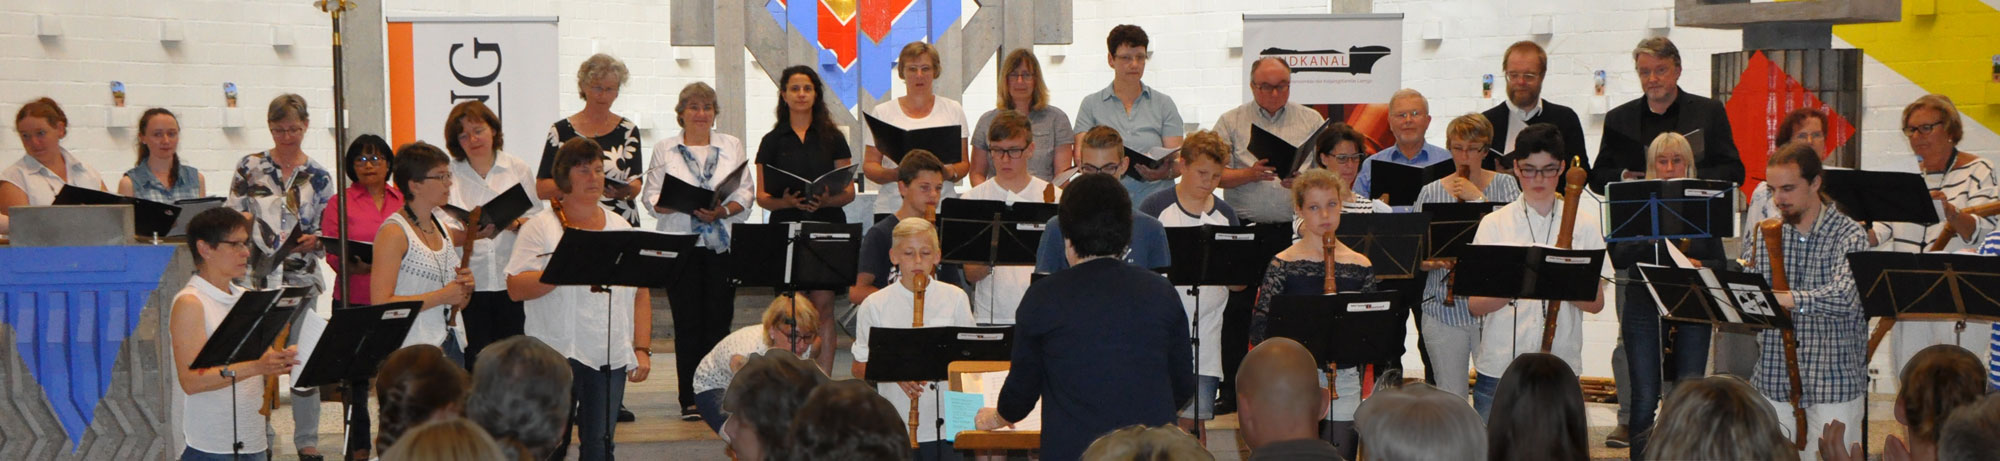 Windkanal und der Chor der Gemeinde Heilig Geist beim Sommerkonzert 2017